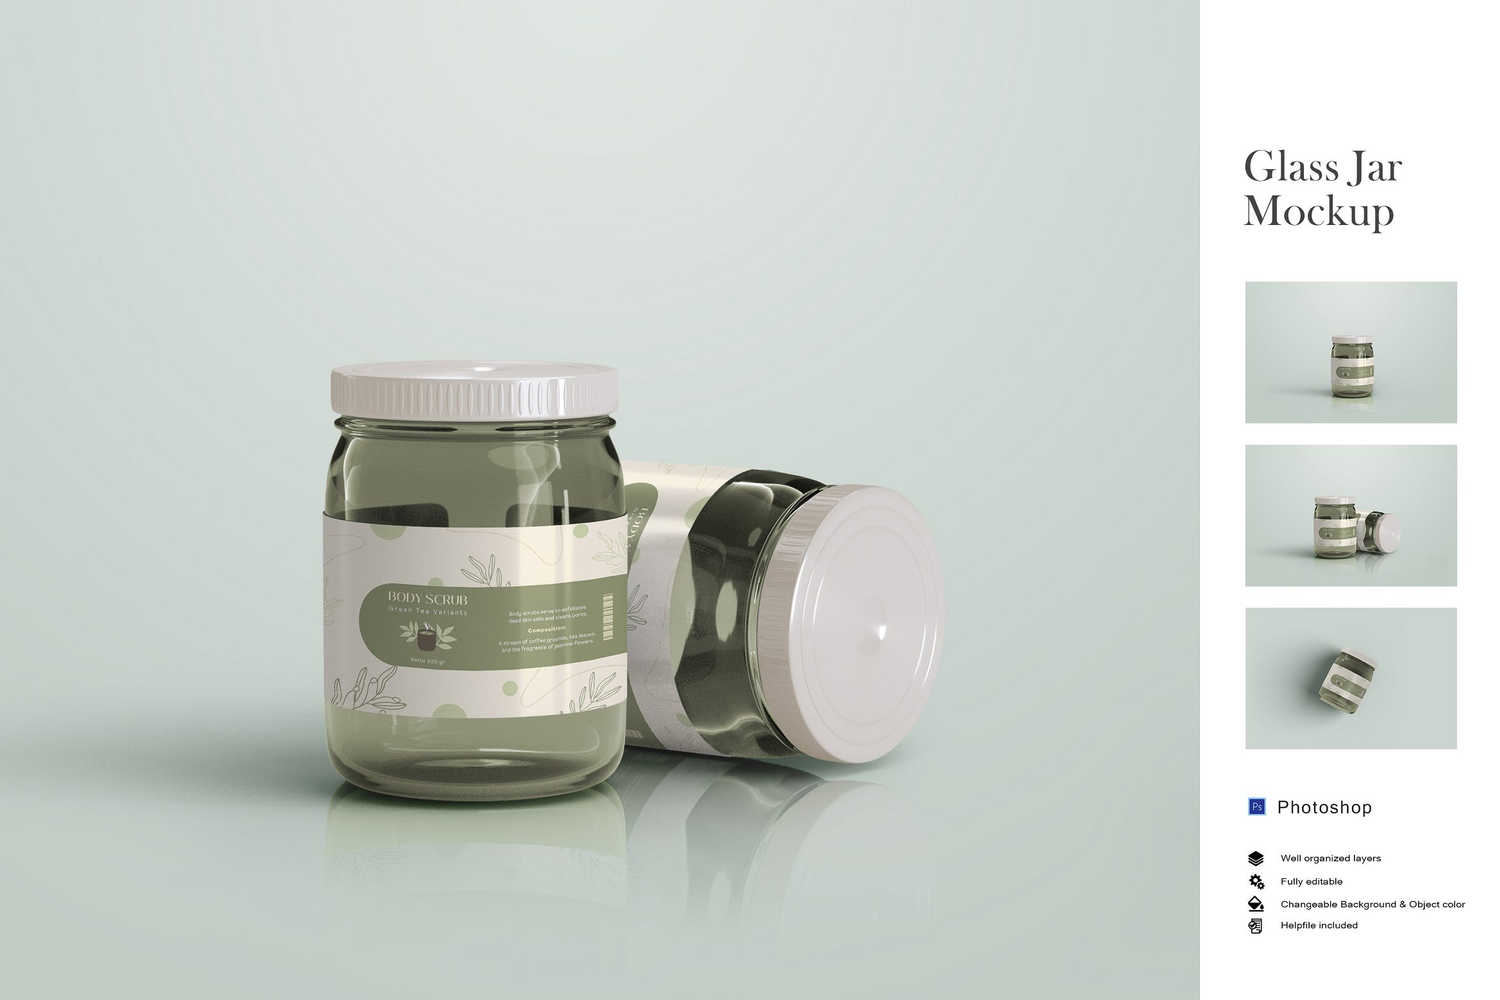 4862 3款透明蜜蜂塑料玻璃罐包装设计PS样机 Glass Jar Mockup@GOOODME.COM